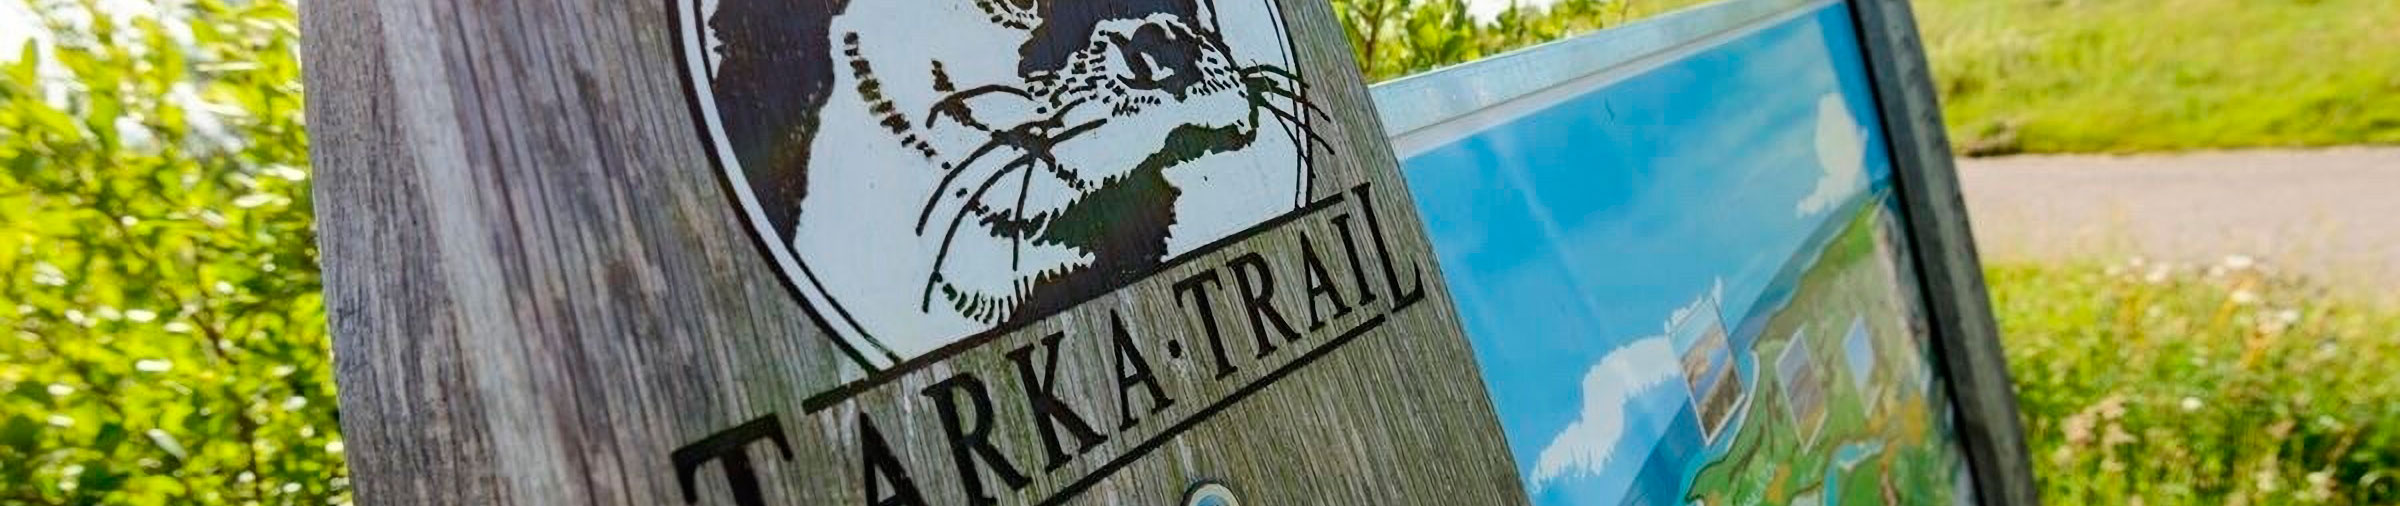 Tarka Trail